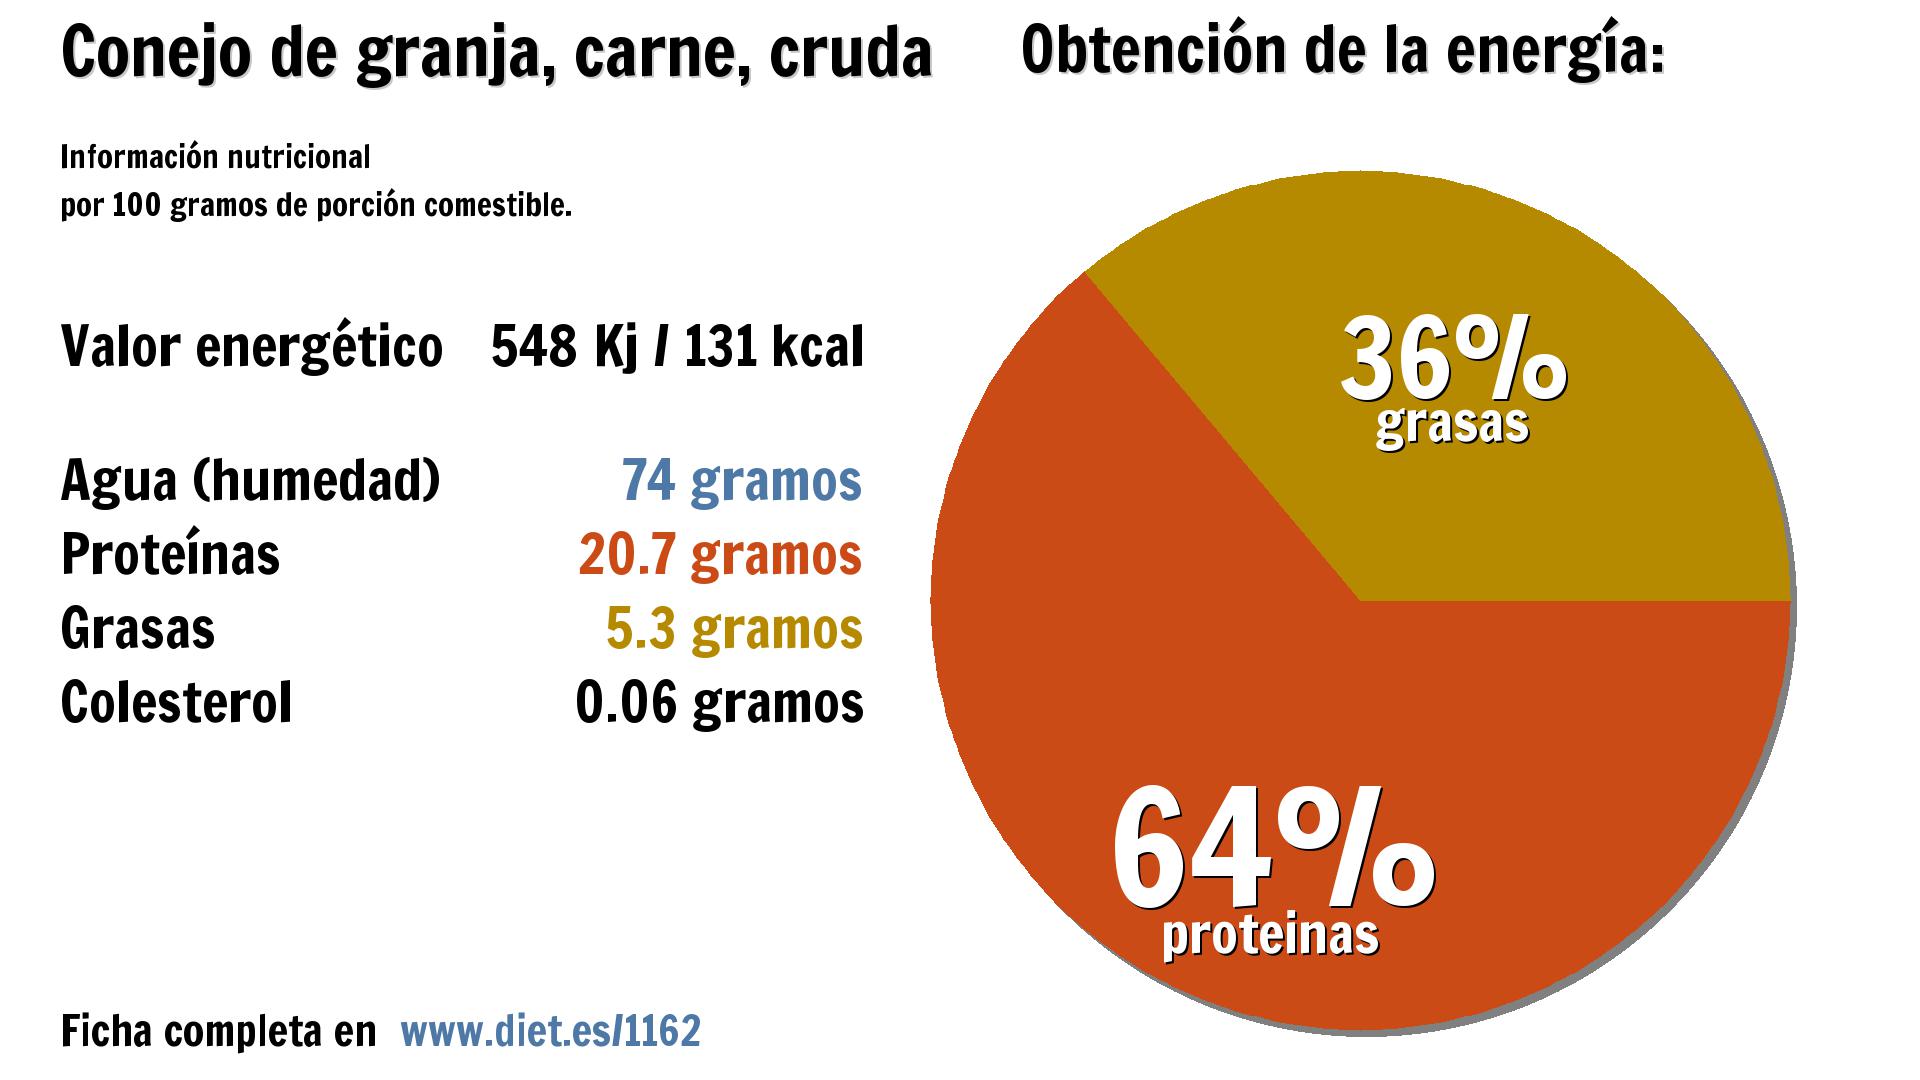 Conejo de granja, carne, cruda: energía 548 Kj, agua 74 g., proteínas 21 g. y grasas 5 g.